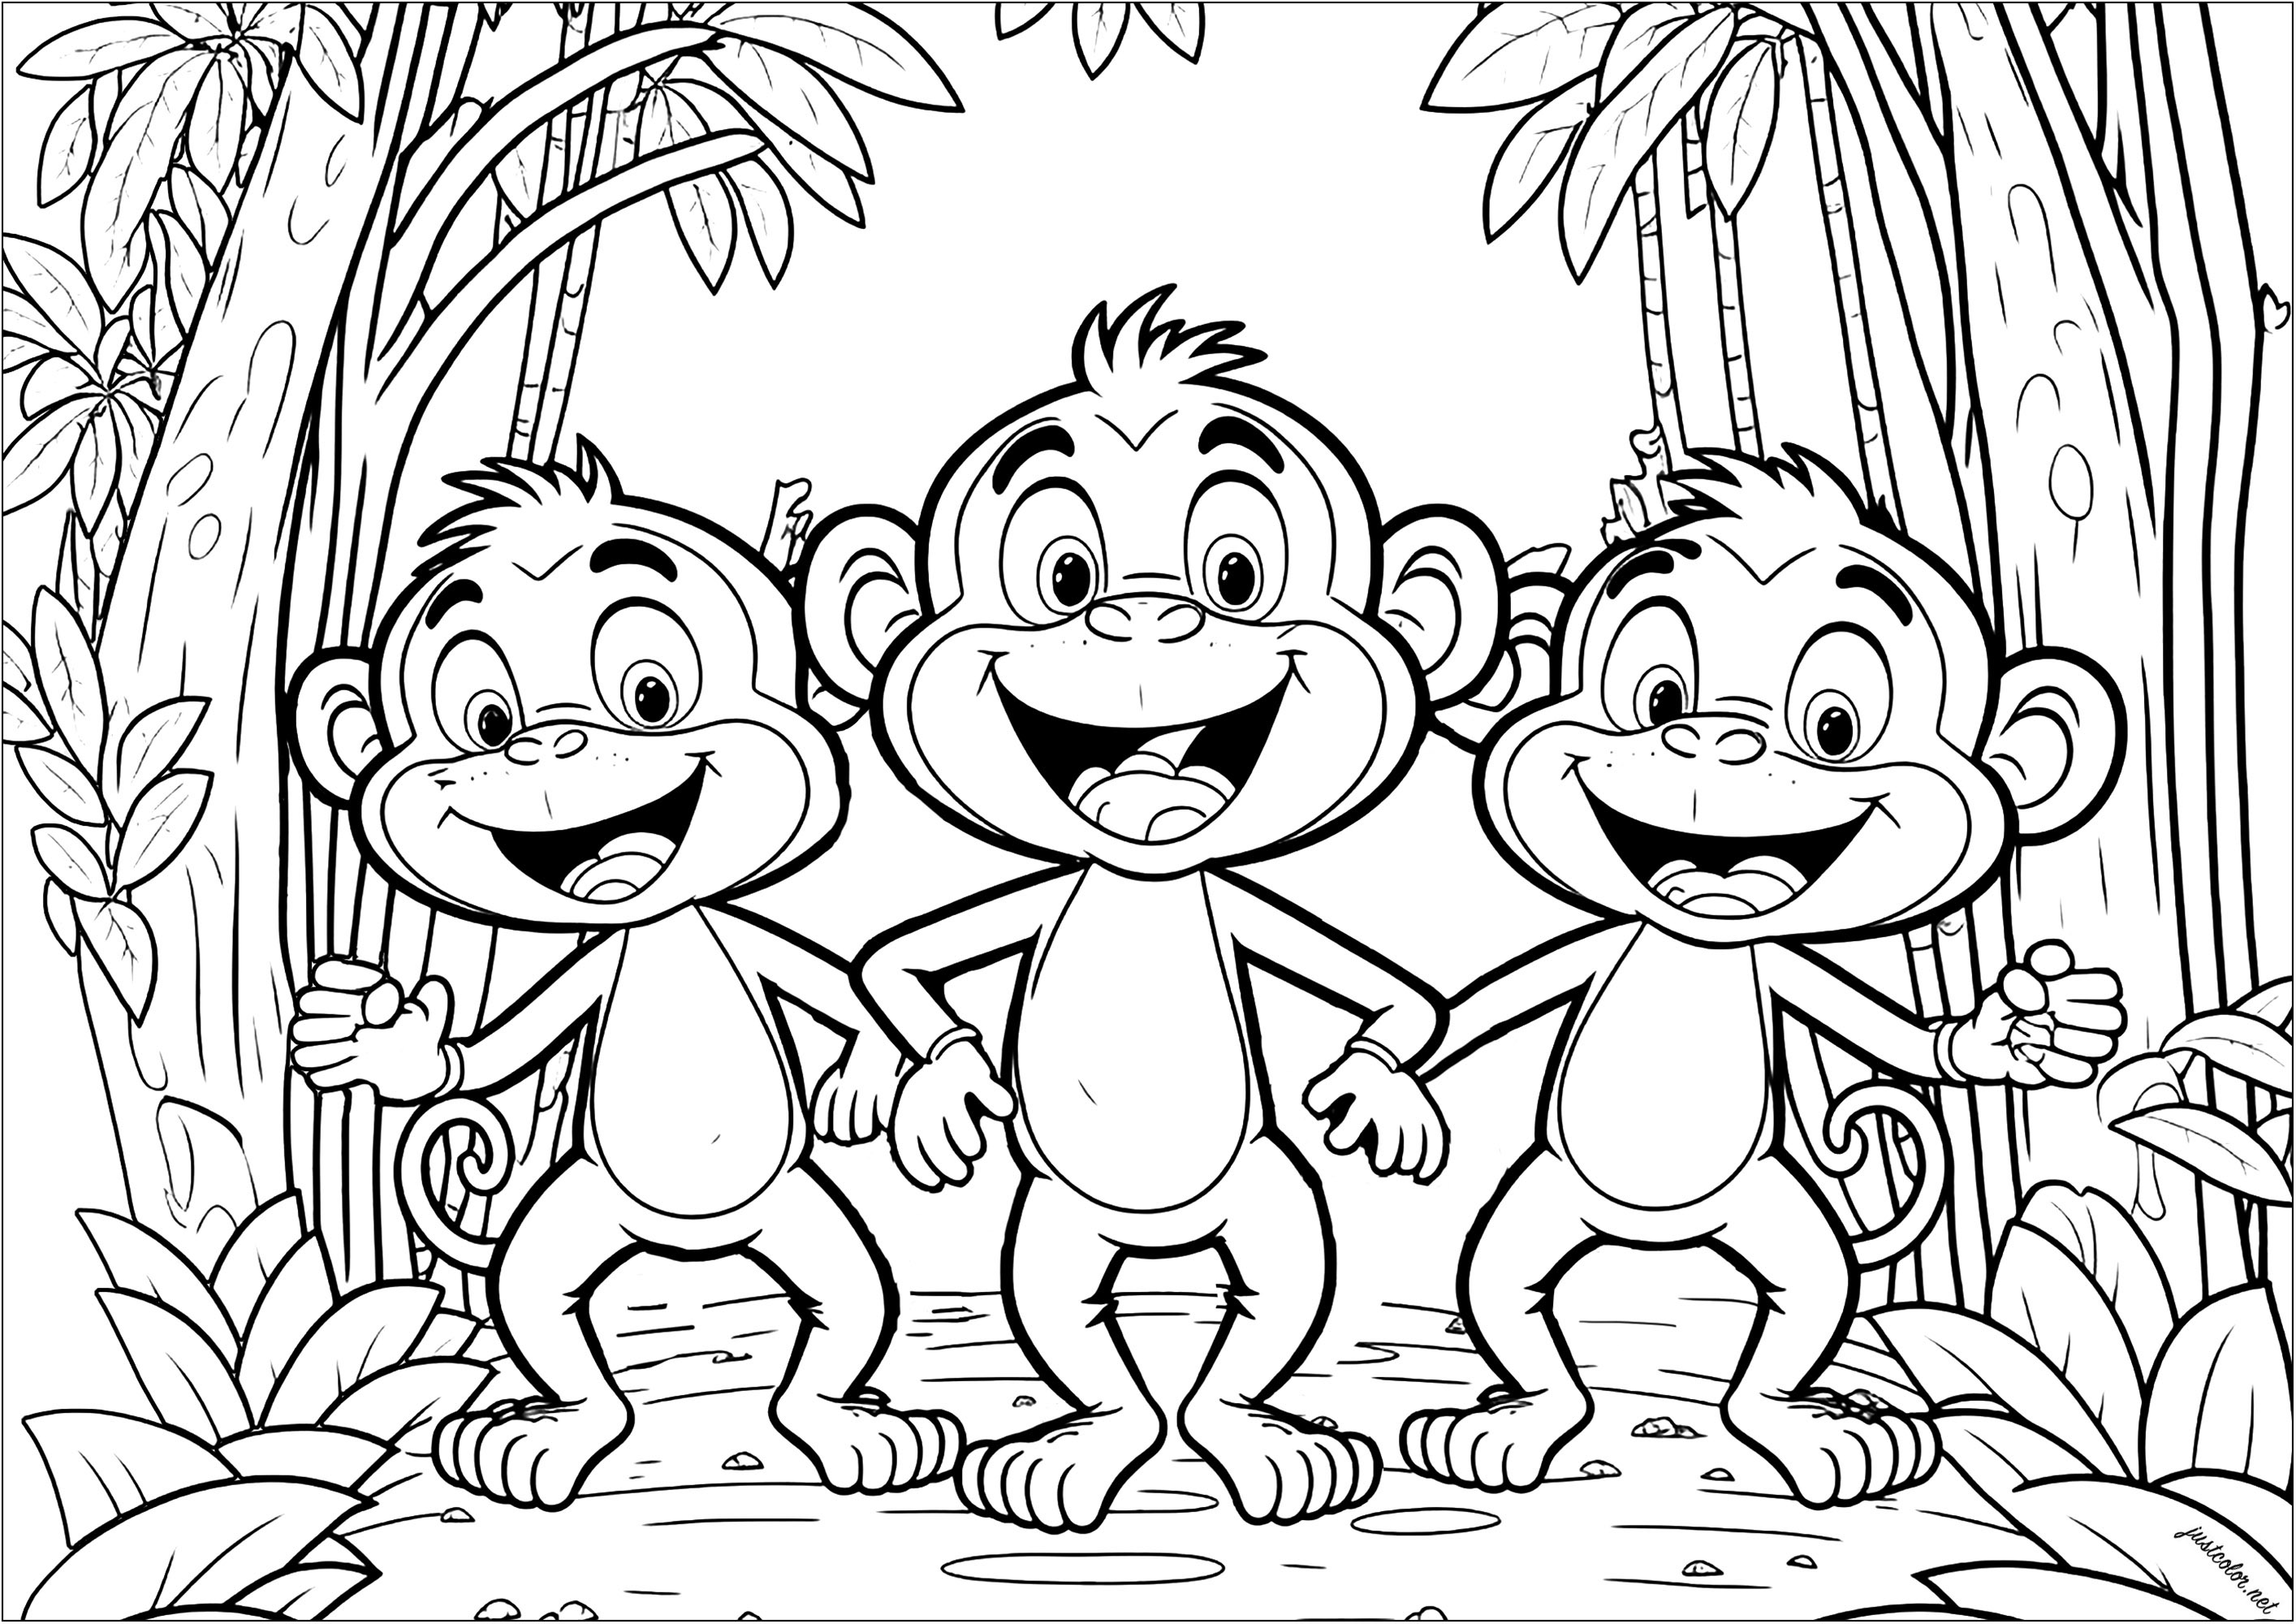 Três macacos divertidos para colorir. Estes primatas parecem muito infantis, mas a vegetação no fundo torna a coloração bastante complexa.